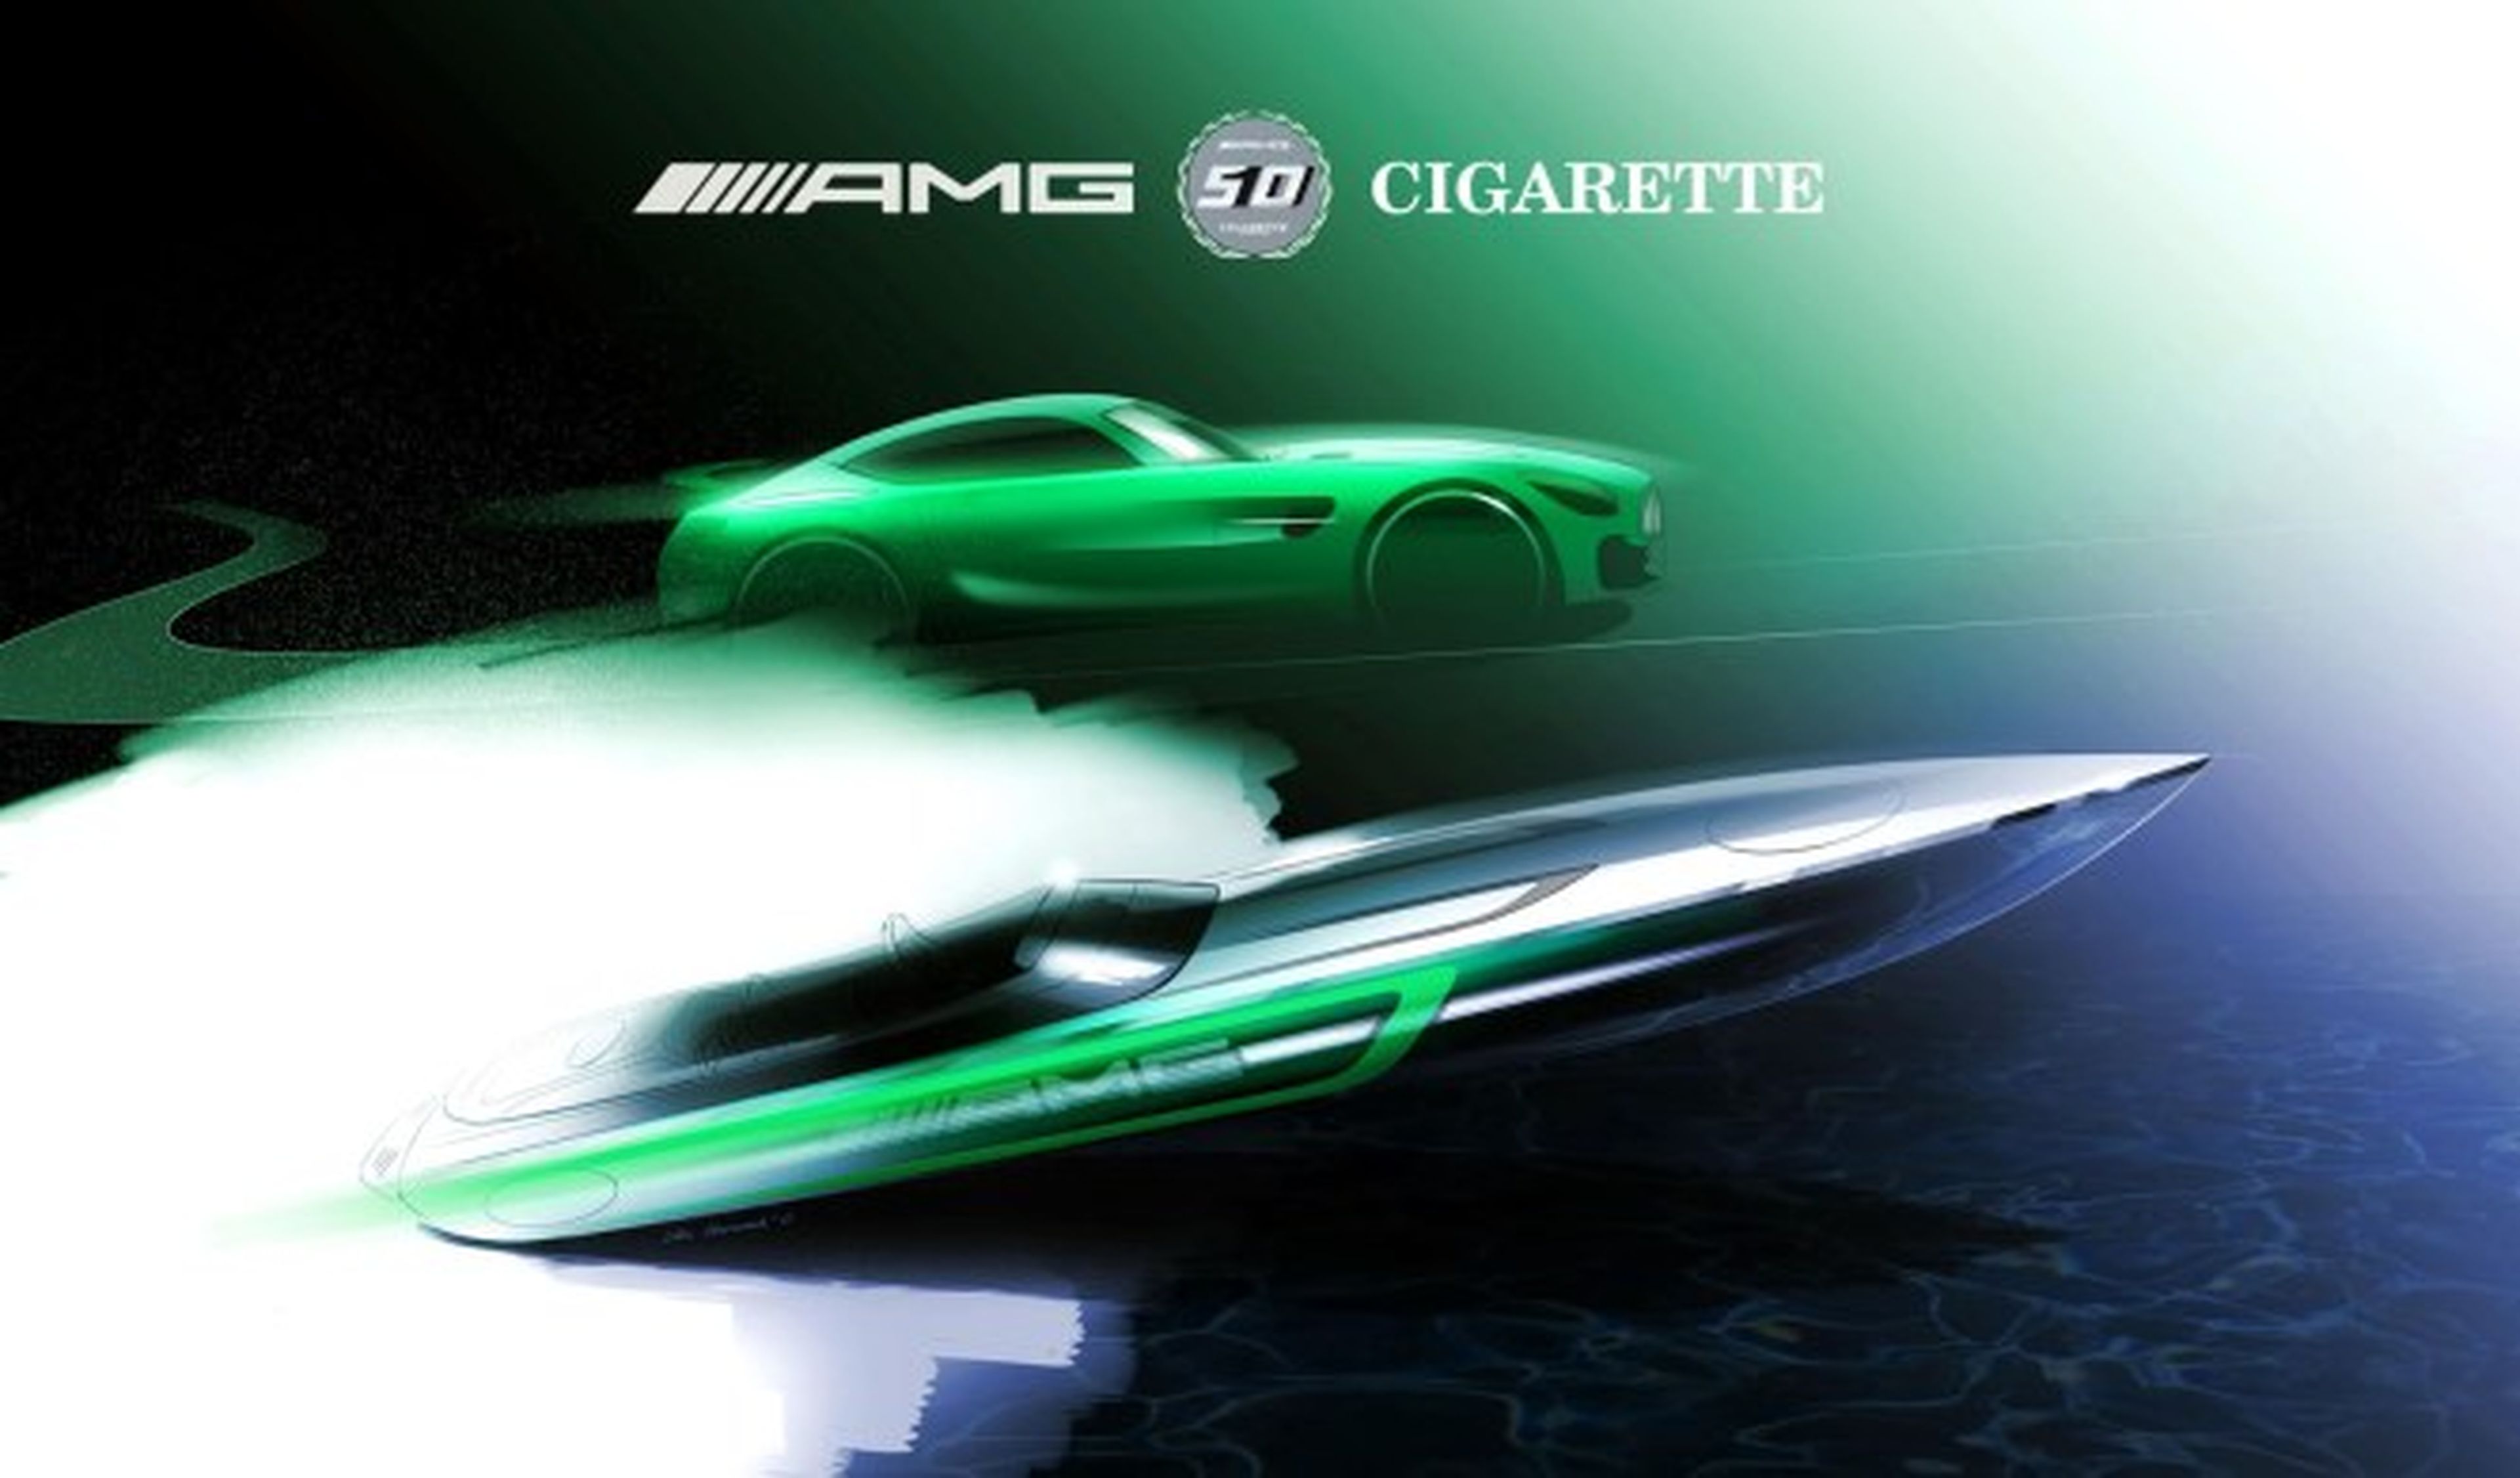 Ya casi está el nuevo barco de Mercedes-AMG y Cigarette